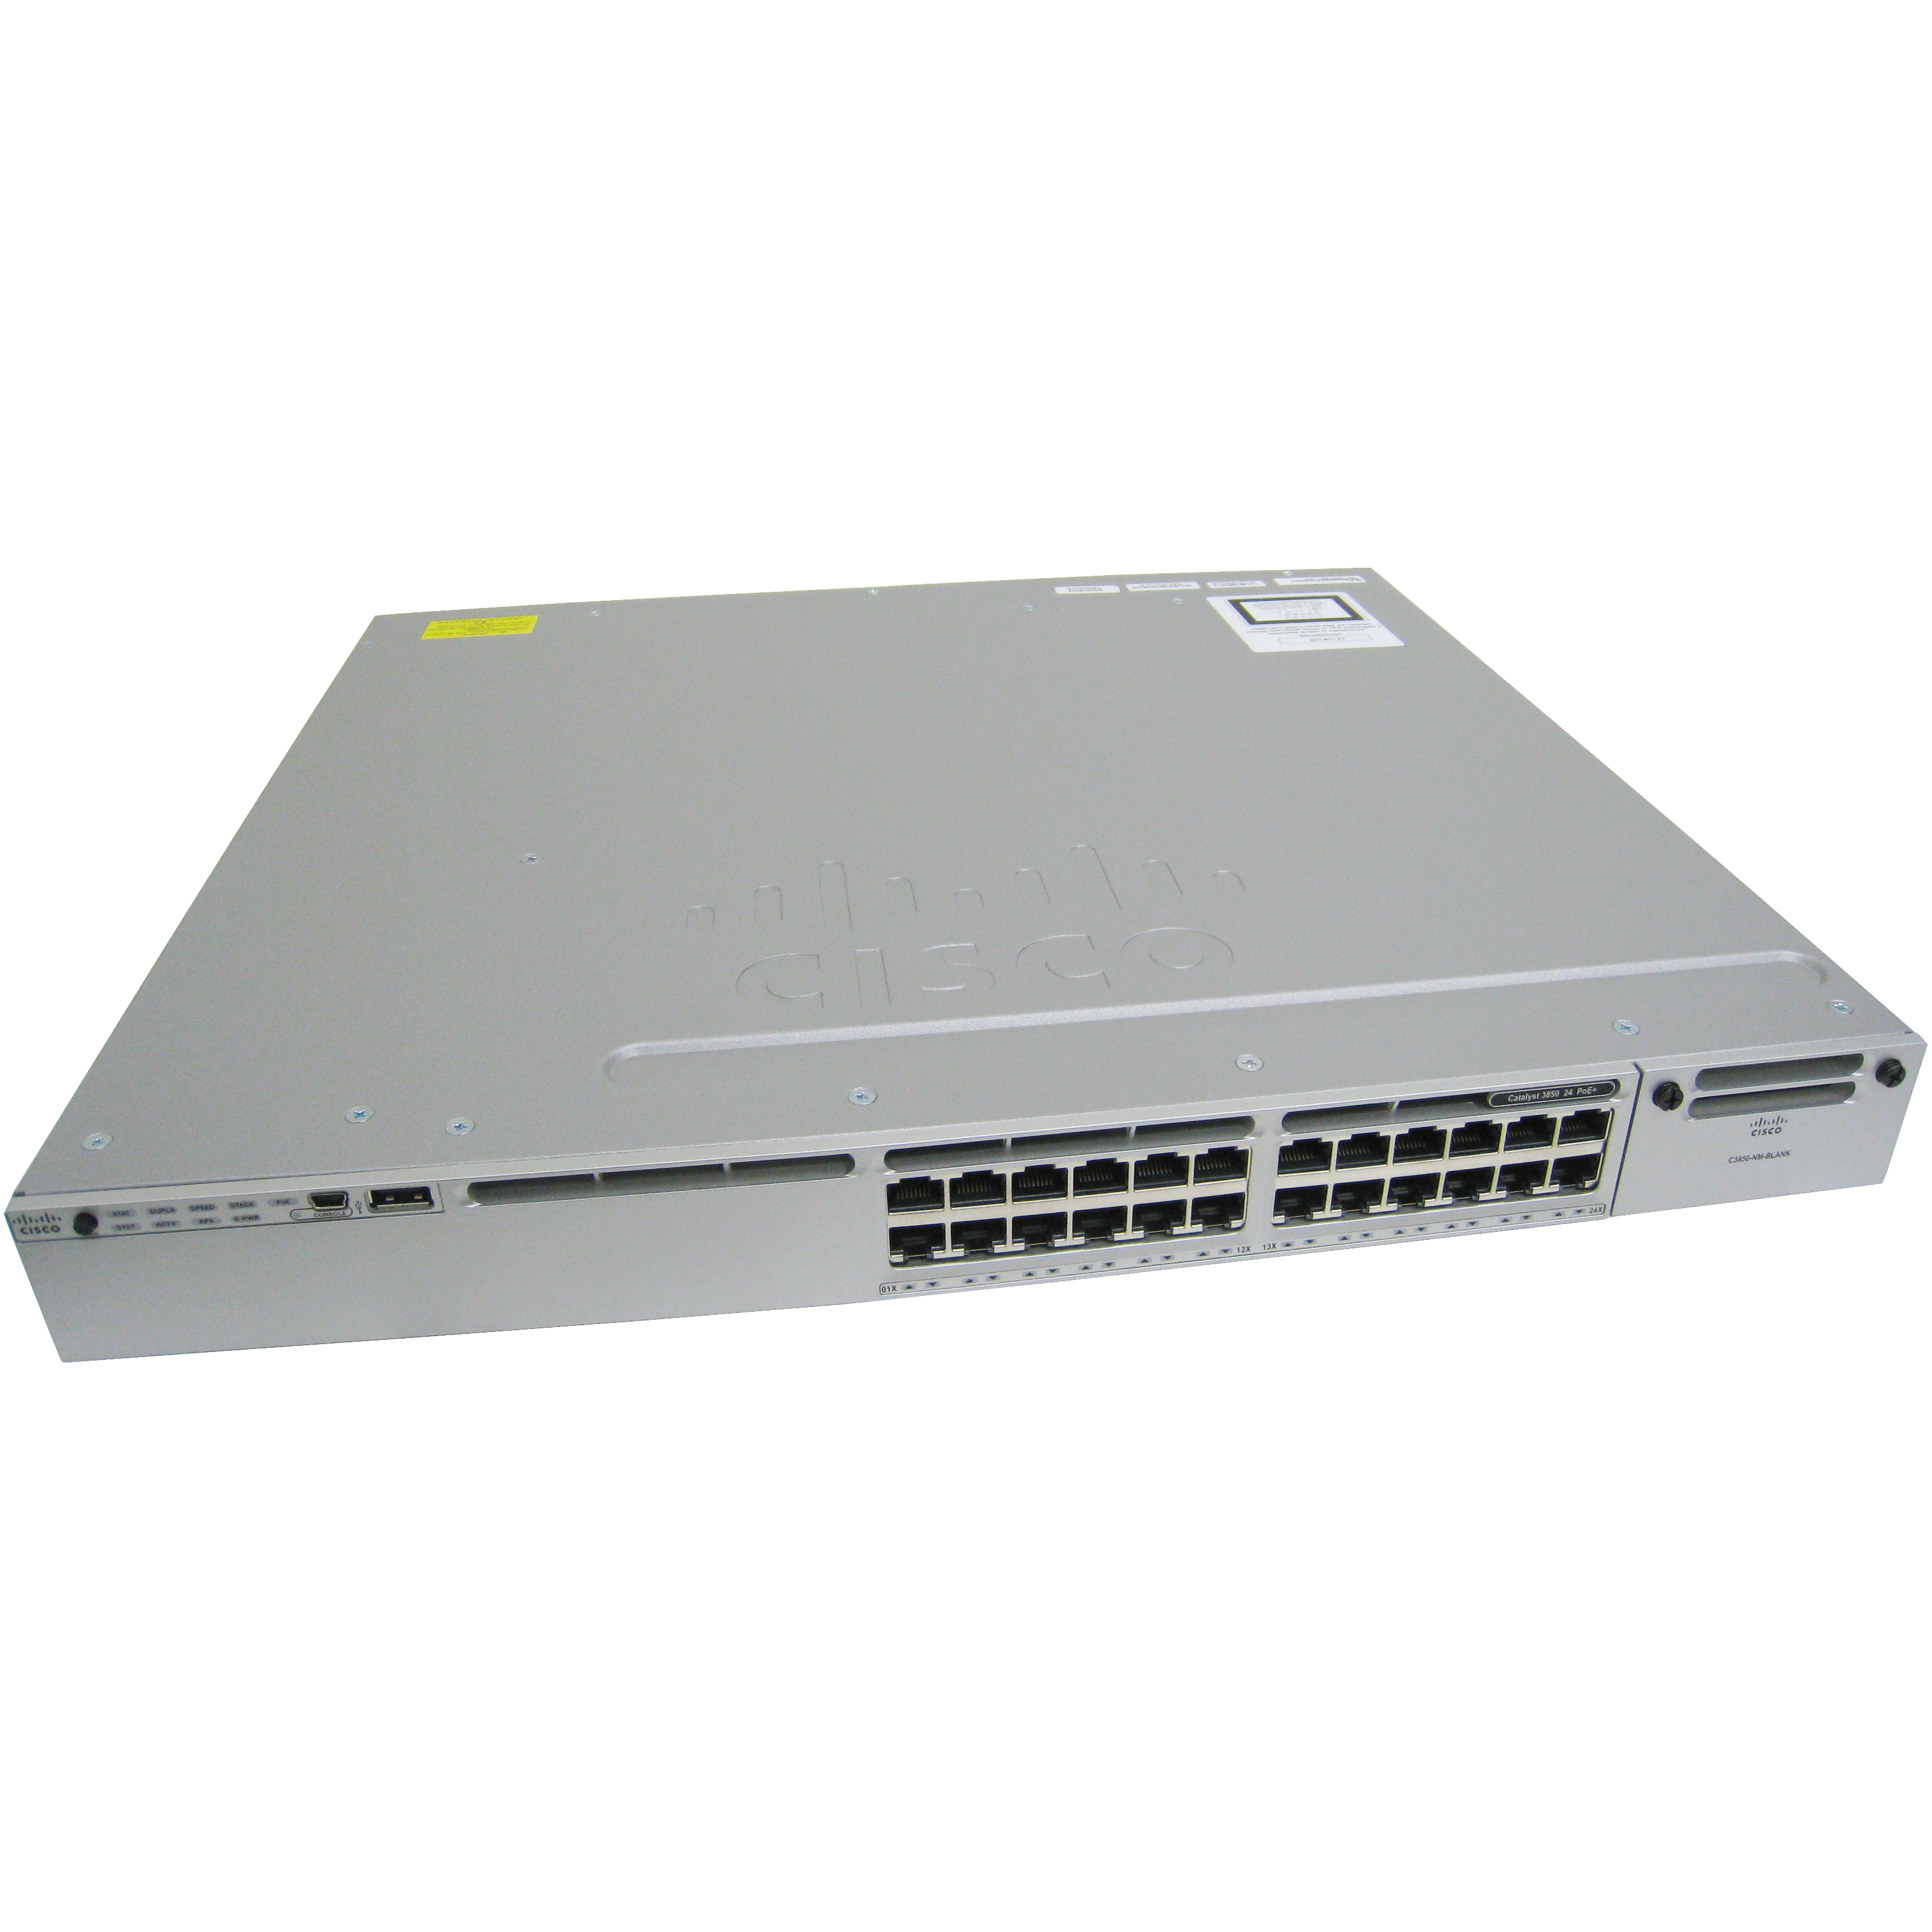 Cisco WS-C3850-24P-L